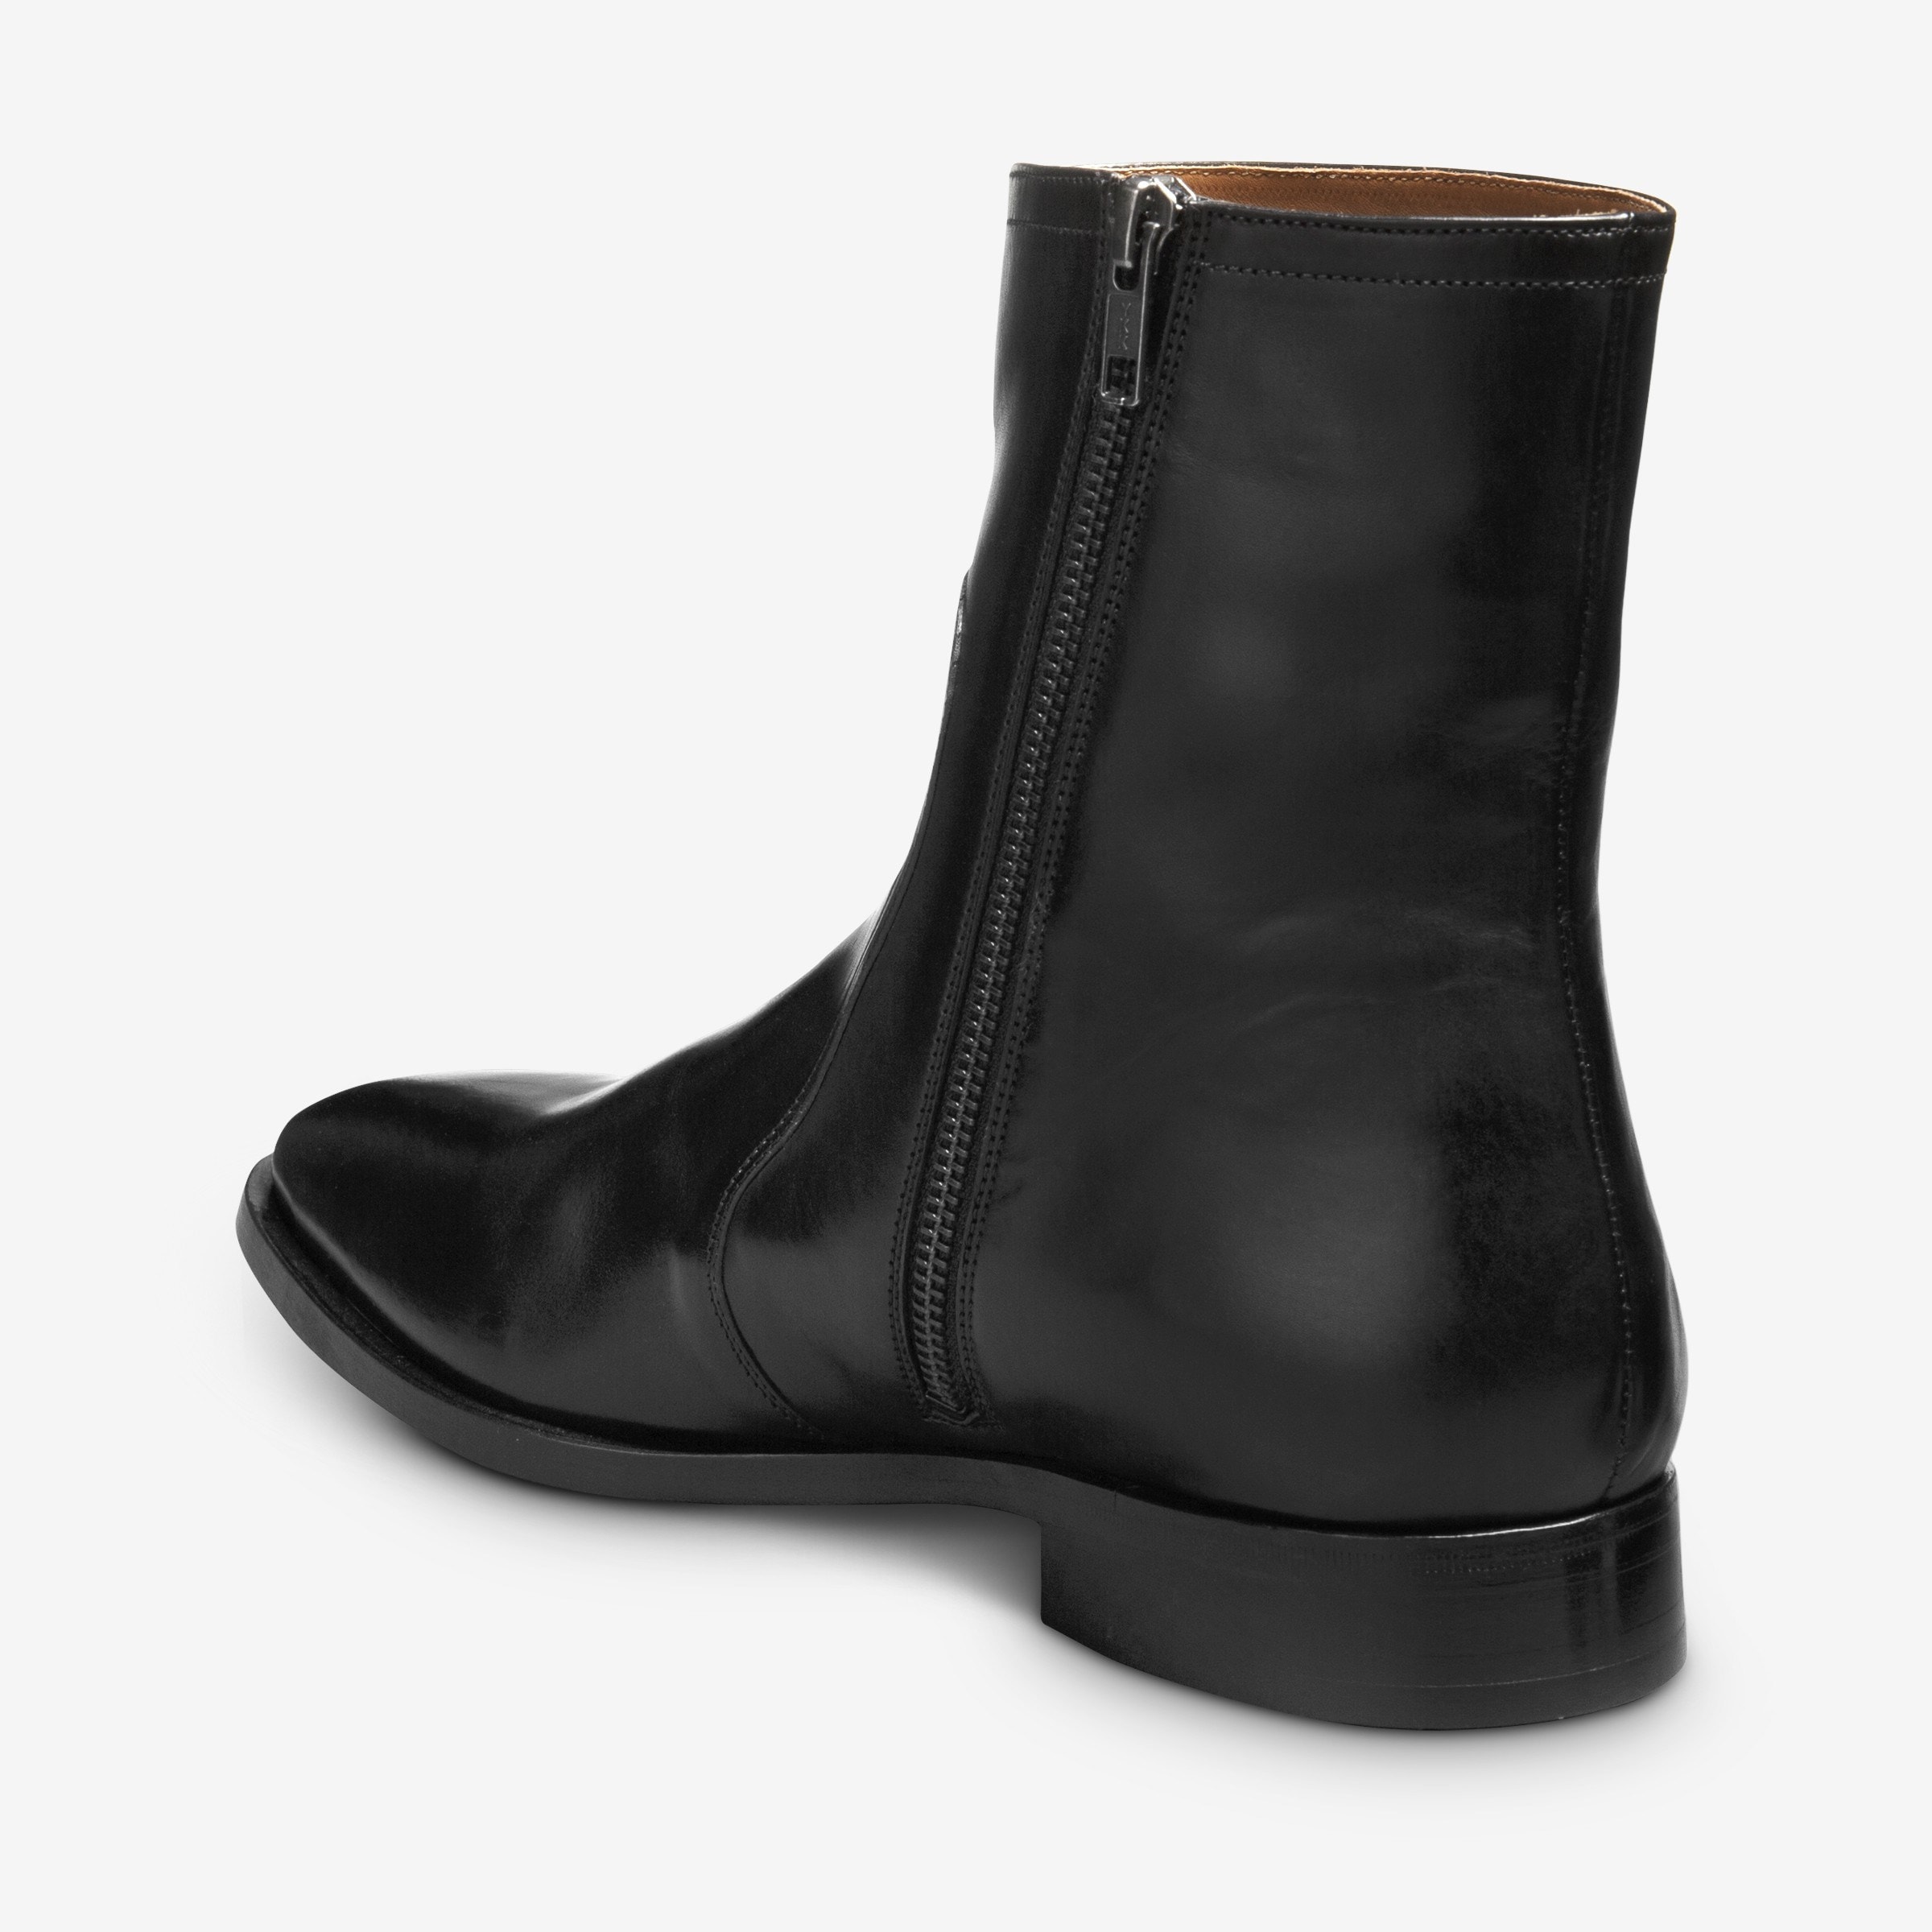 Siena Zip-up Boot | Men's Boots | Allen Edmonds